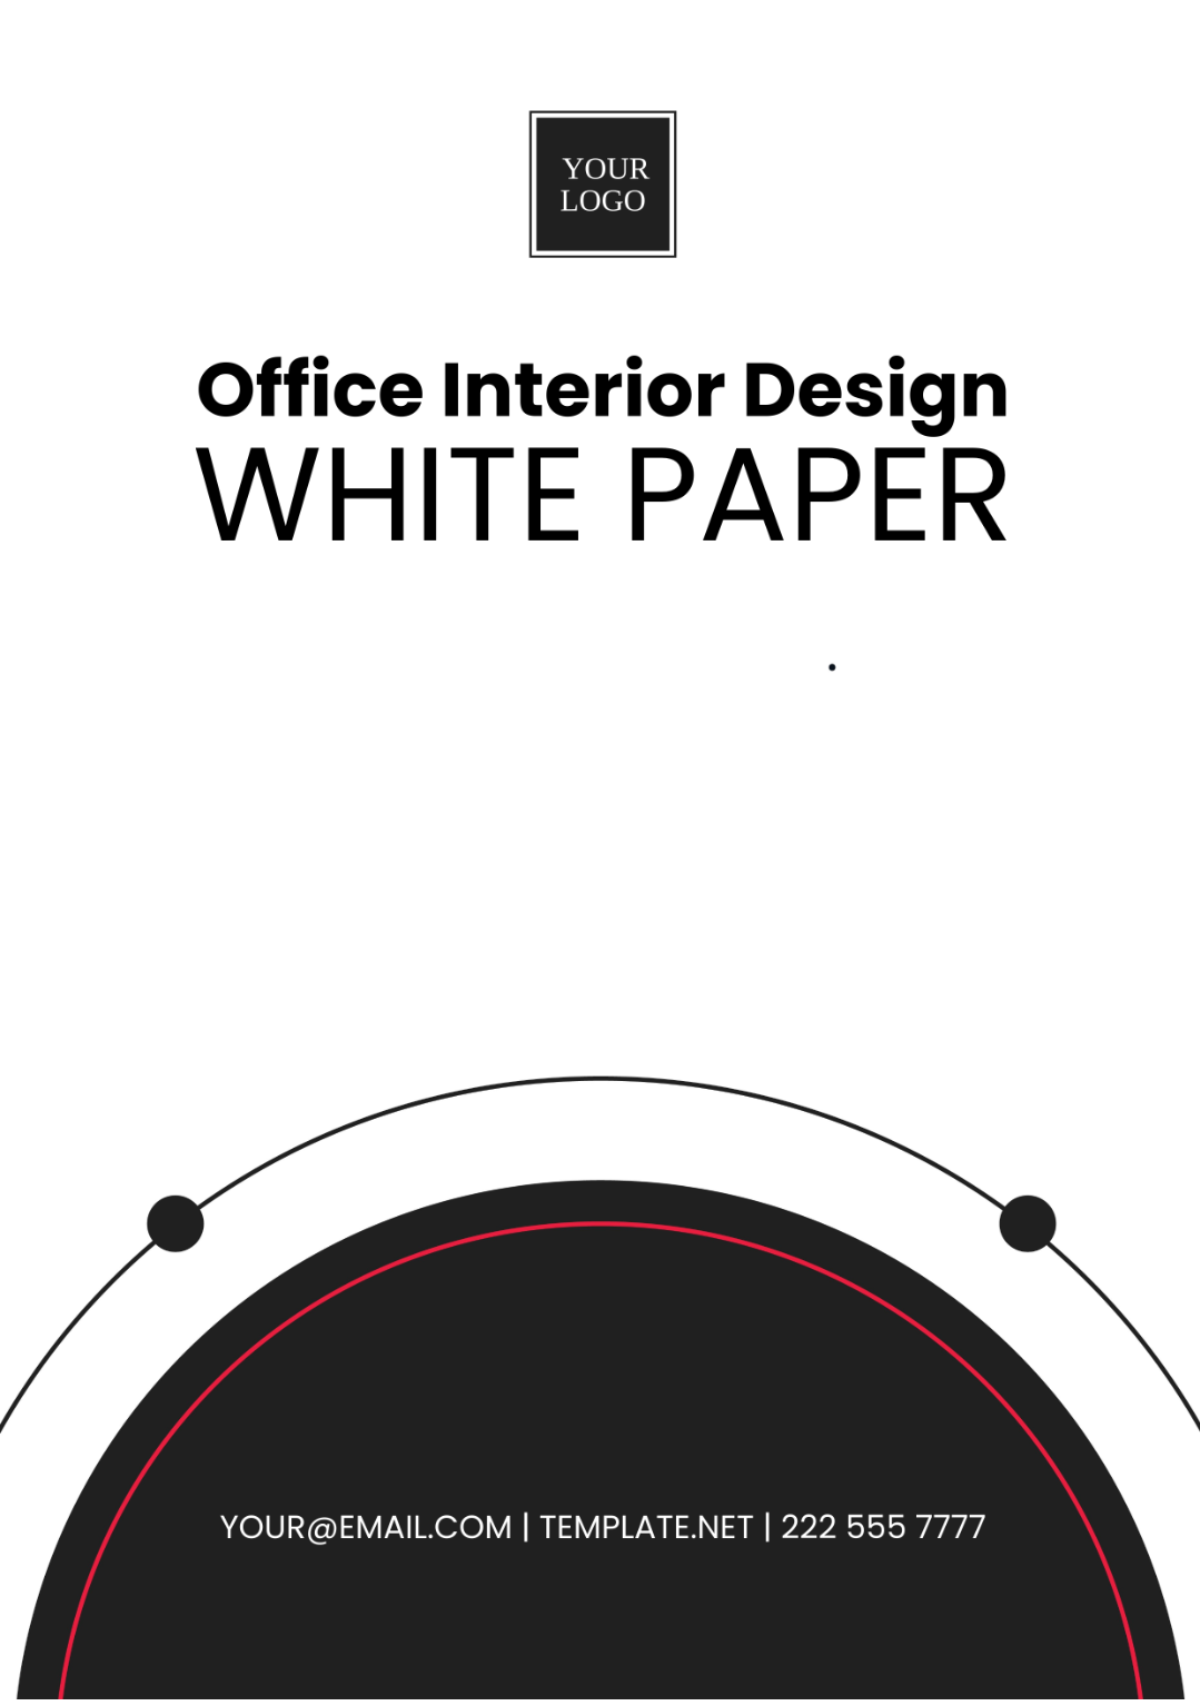 Office Interior Design White Paper Template